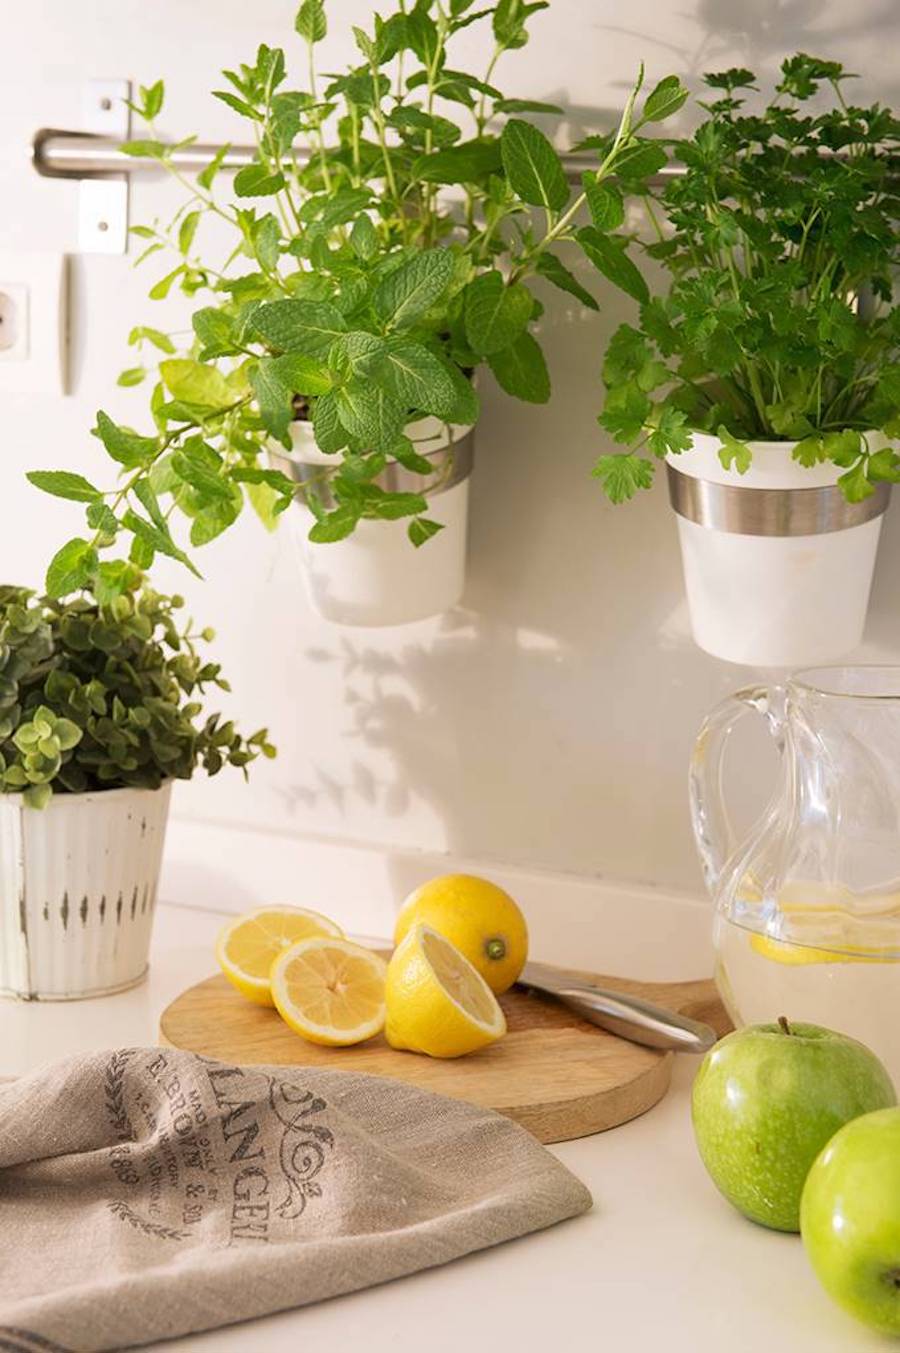 Detalle de un mesón de cocina blanco con una tabla con limones partidos, un jarro con agua y rodajas de limón, un paso de cocina, 2 manzanas verdes y 1 pequeña planta. De la pared cuelgan 2 mini maceteros con hierbas aromáticas.